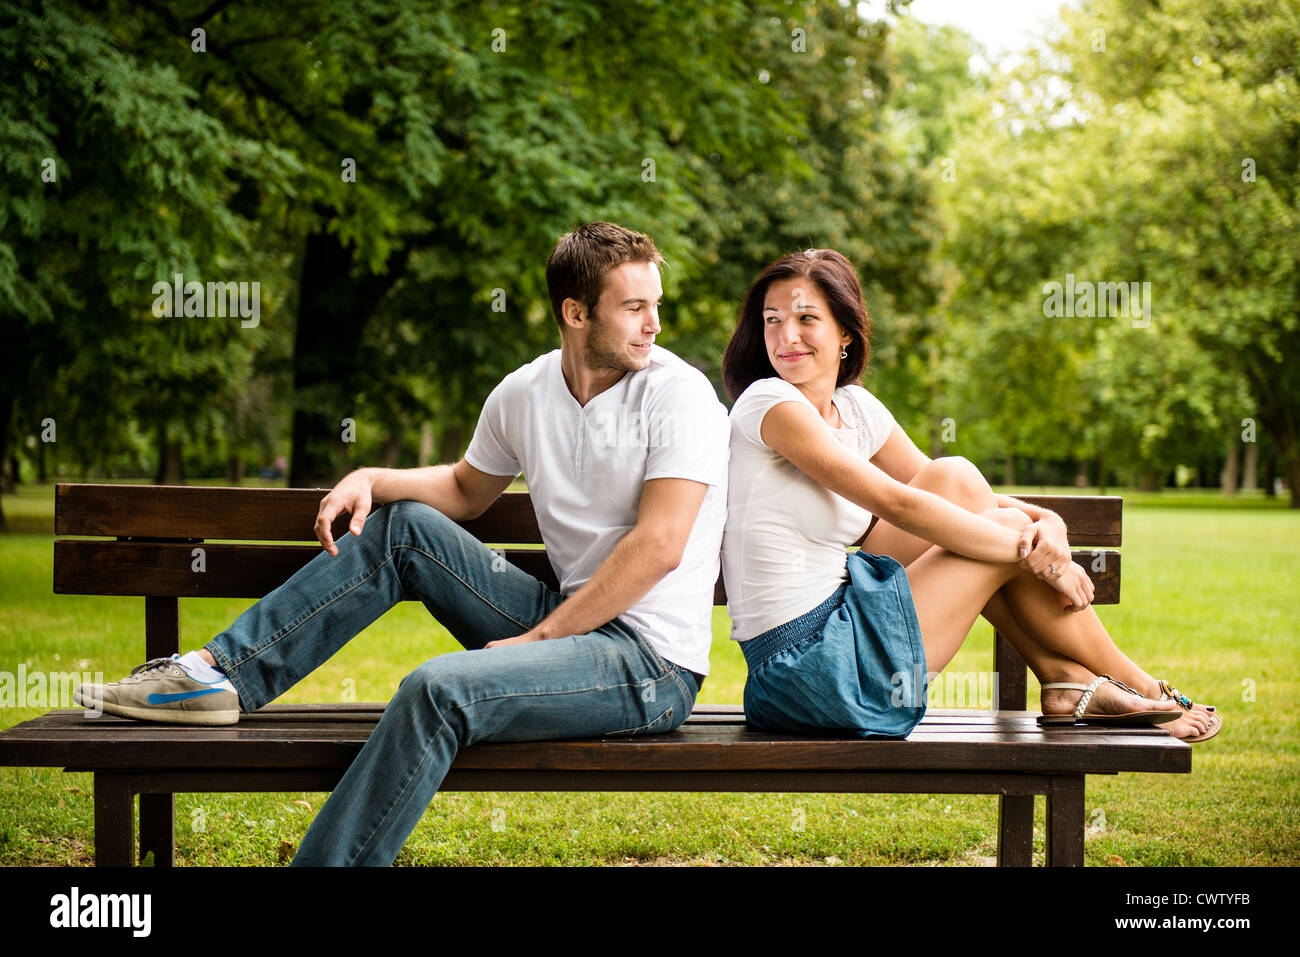 Junges Lächeln paar suchen auf einander - auf Bank sitzend Stockfoto